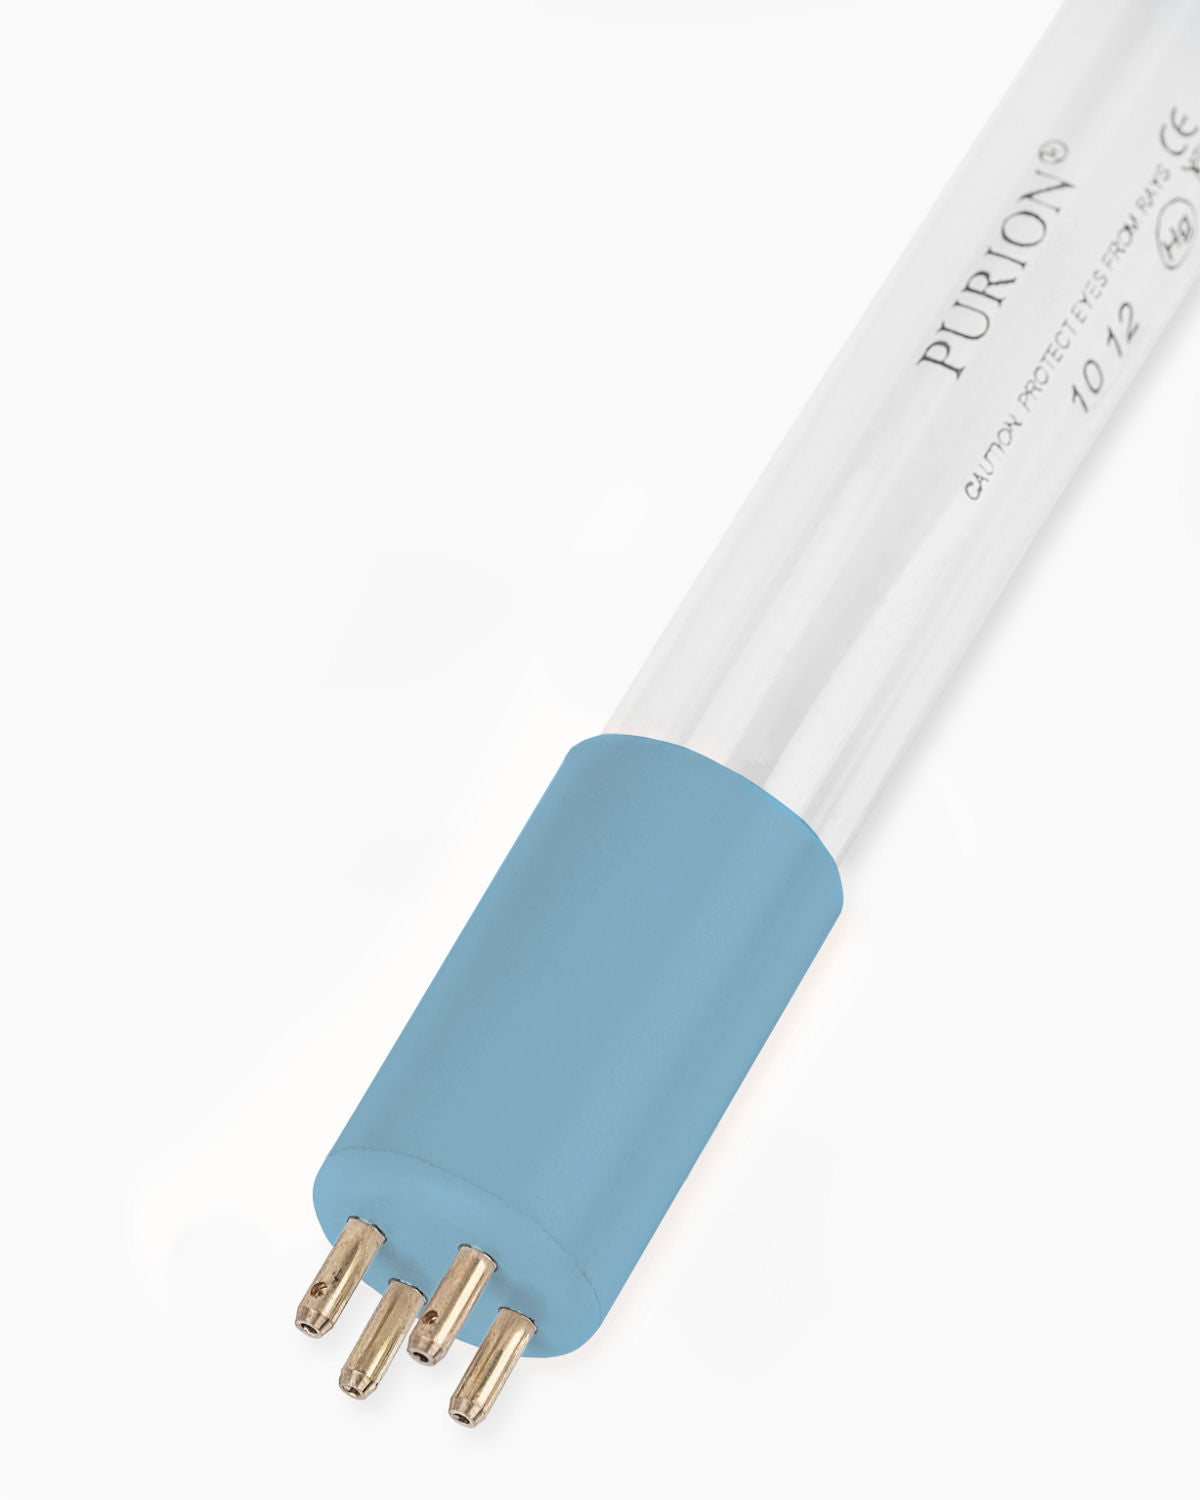 Eine PURION UVC-Lampe 42 W auf weißem Hintergrund, konzipiert für UV-C-Ersatzlampe oder UV-Desinfektionsanlage PURION GmbH.